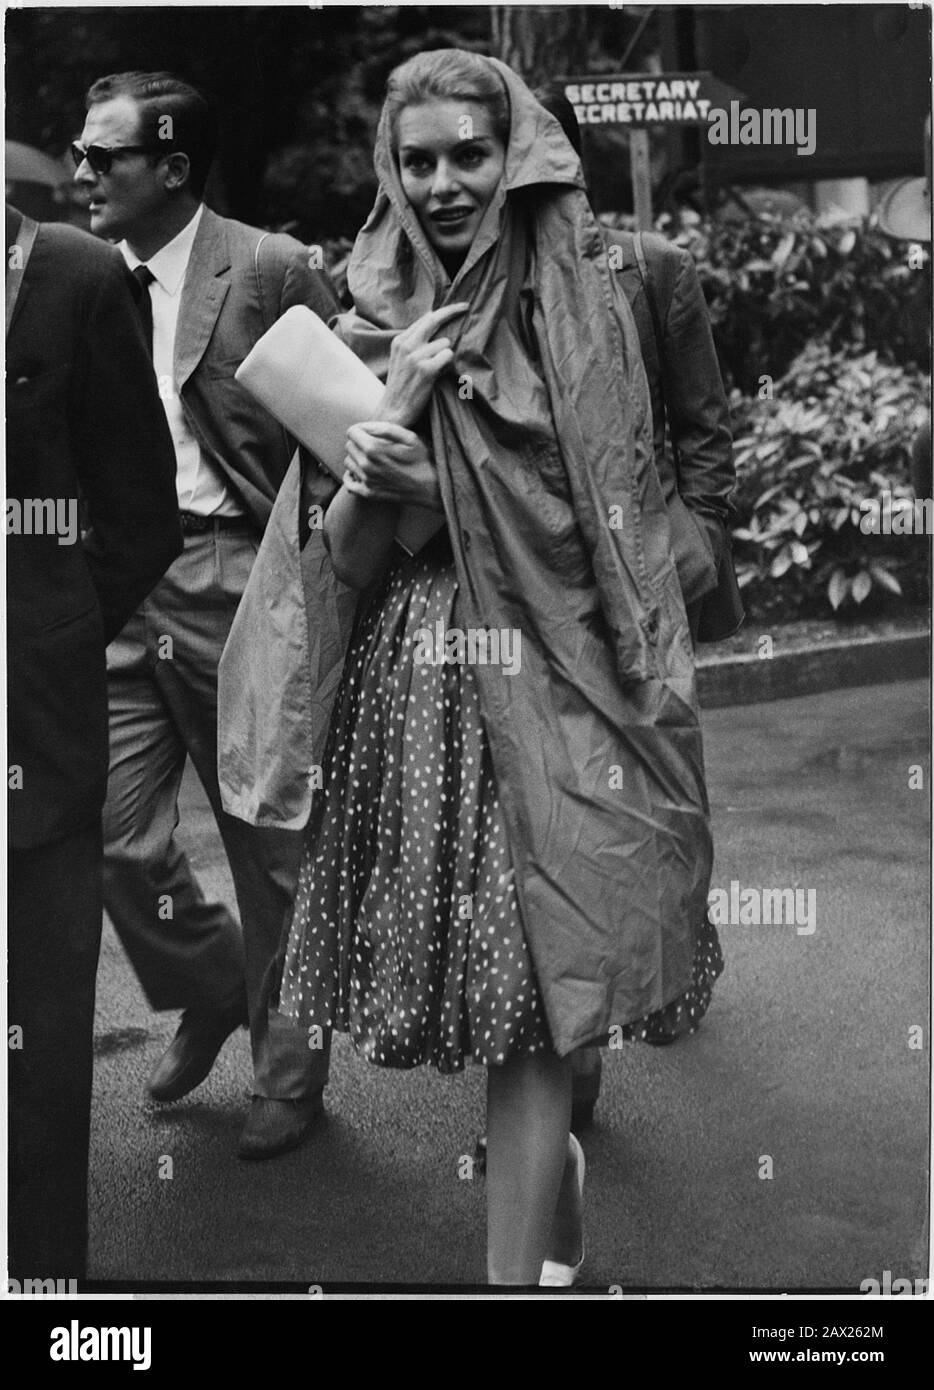 1959, 28 giugno , PARIGI , FRANCIA : l'attrice cinematografica britannica BELINDA LEE ( 1935 - 1961 ) incoronato dal drammaturgo italiano Principe Raimondo ORSINI ( Roma 18 novembre 1931 ) a LONGCHAMP sotto la pioggia . Fotografo non identificato . - CINEMA - DIVA - DIVINA - sorriso - sorriso - sorriso - impermeabile - impermeabile - pioggia - Principe - nobili nobiltà italiana - nobiltà italiana - DOLCE vita ---- Archivio GBB Foto Stock